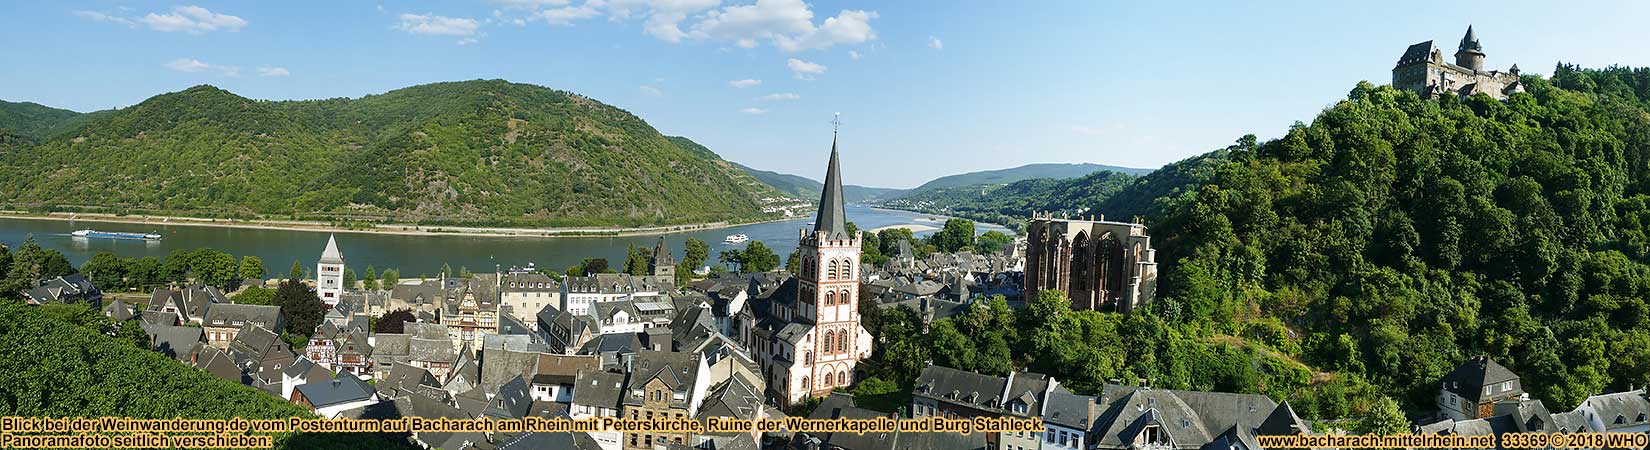 Panoramabild von Bacharach am Rhein